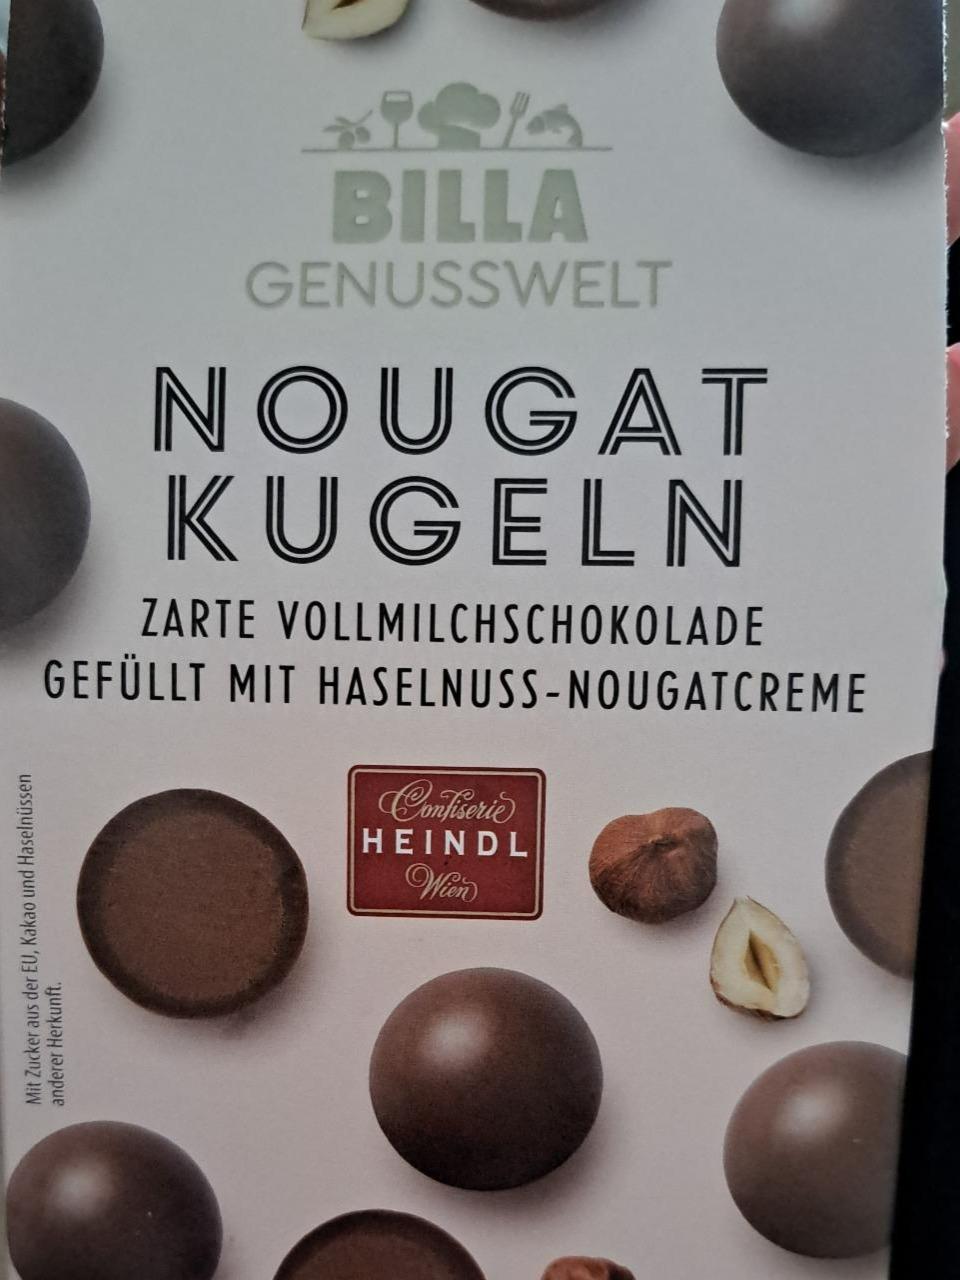 Fotografie - Genusswelt Nougat kugeln zarte vollmilchschokolade gefüllt mit haselnuss-nougatcreme Billa